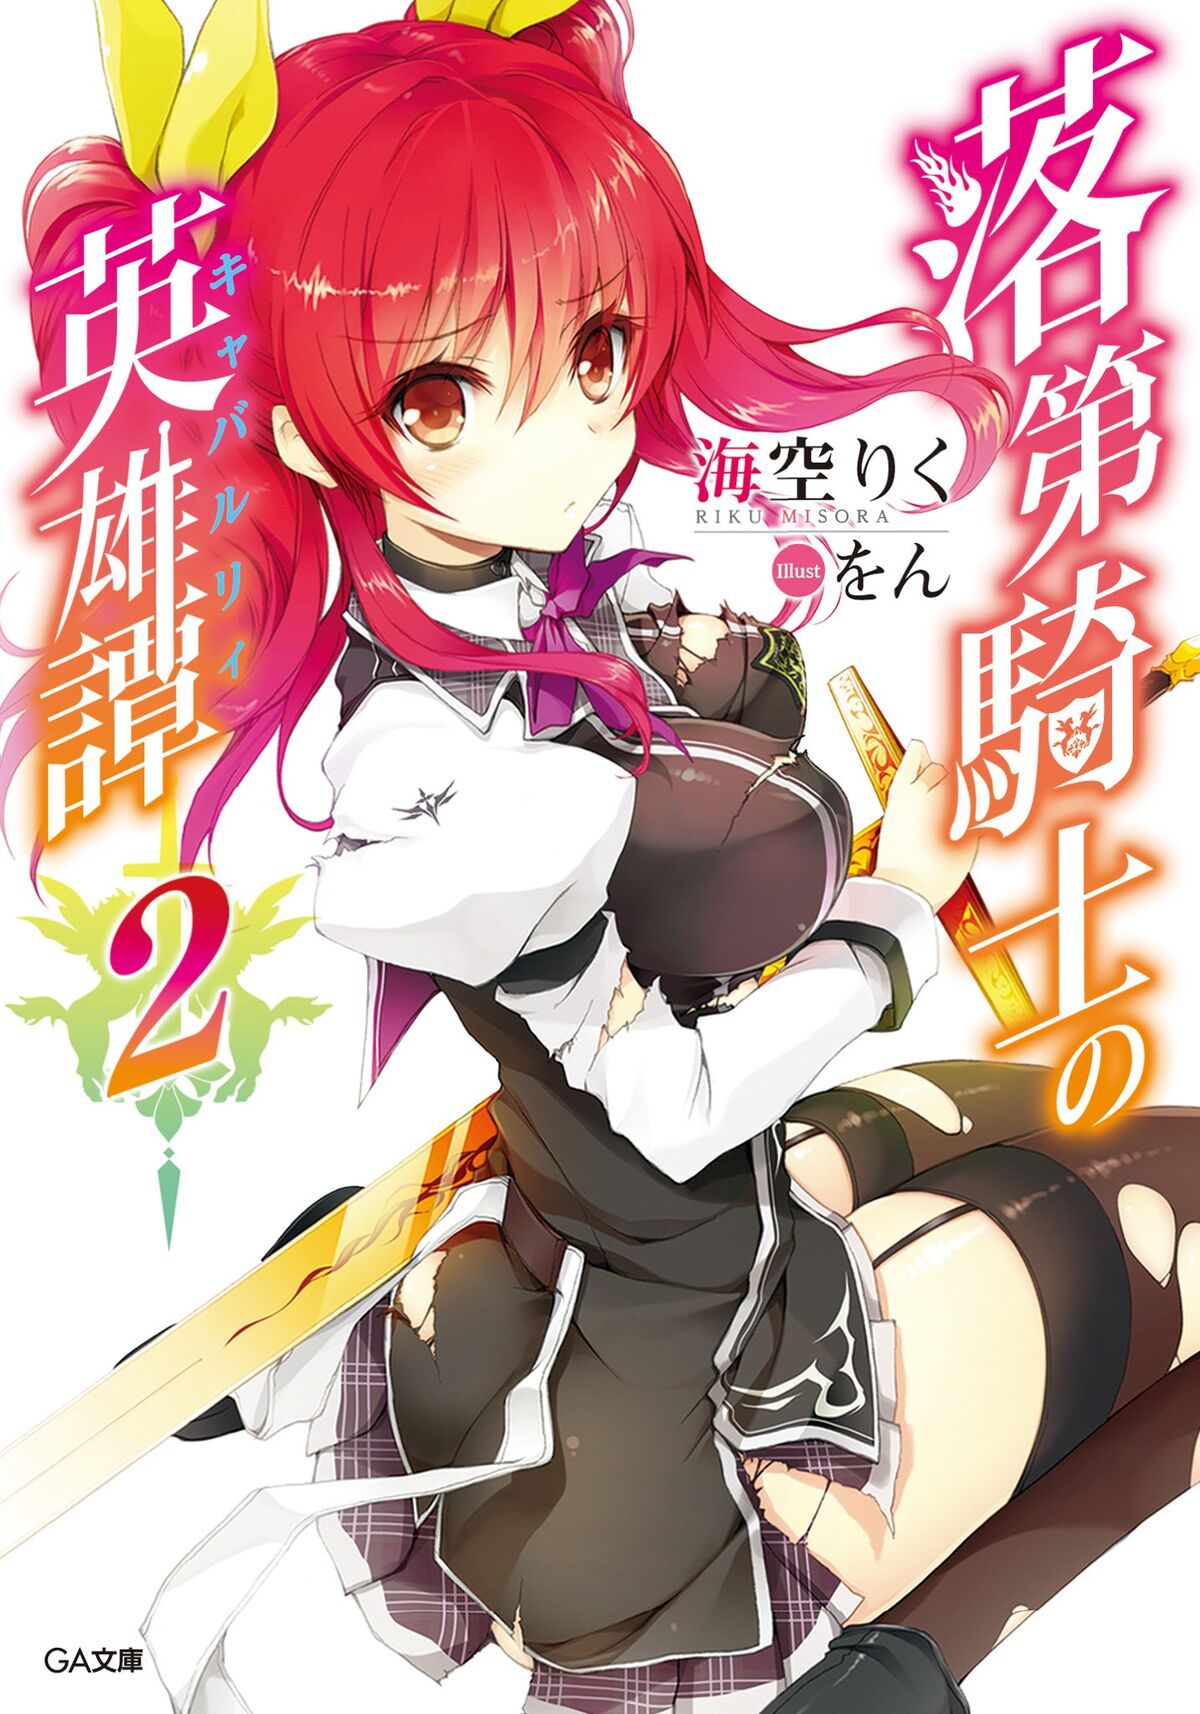 Light Novel Volume 16, Rakudai Kishi no Eiyuutan Wiki